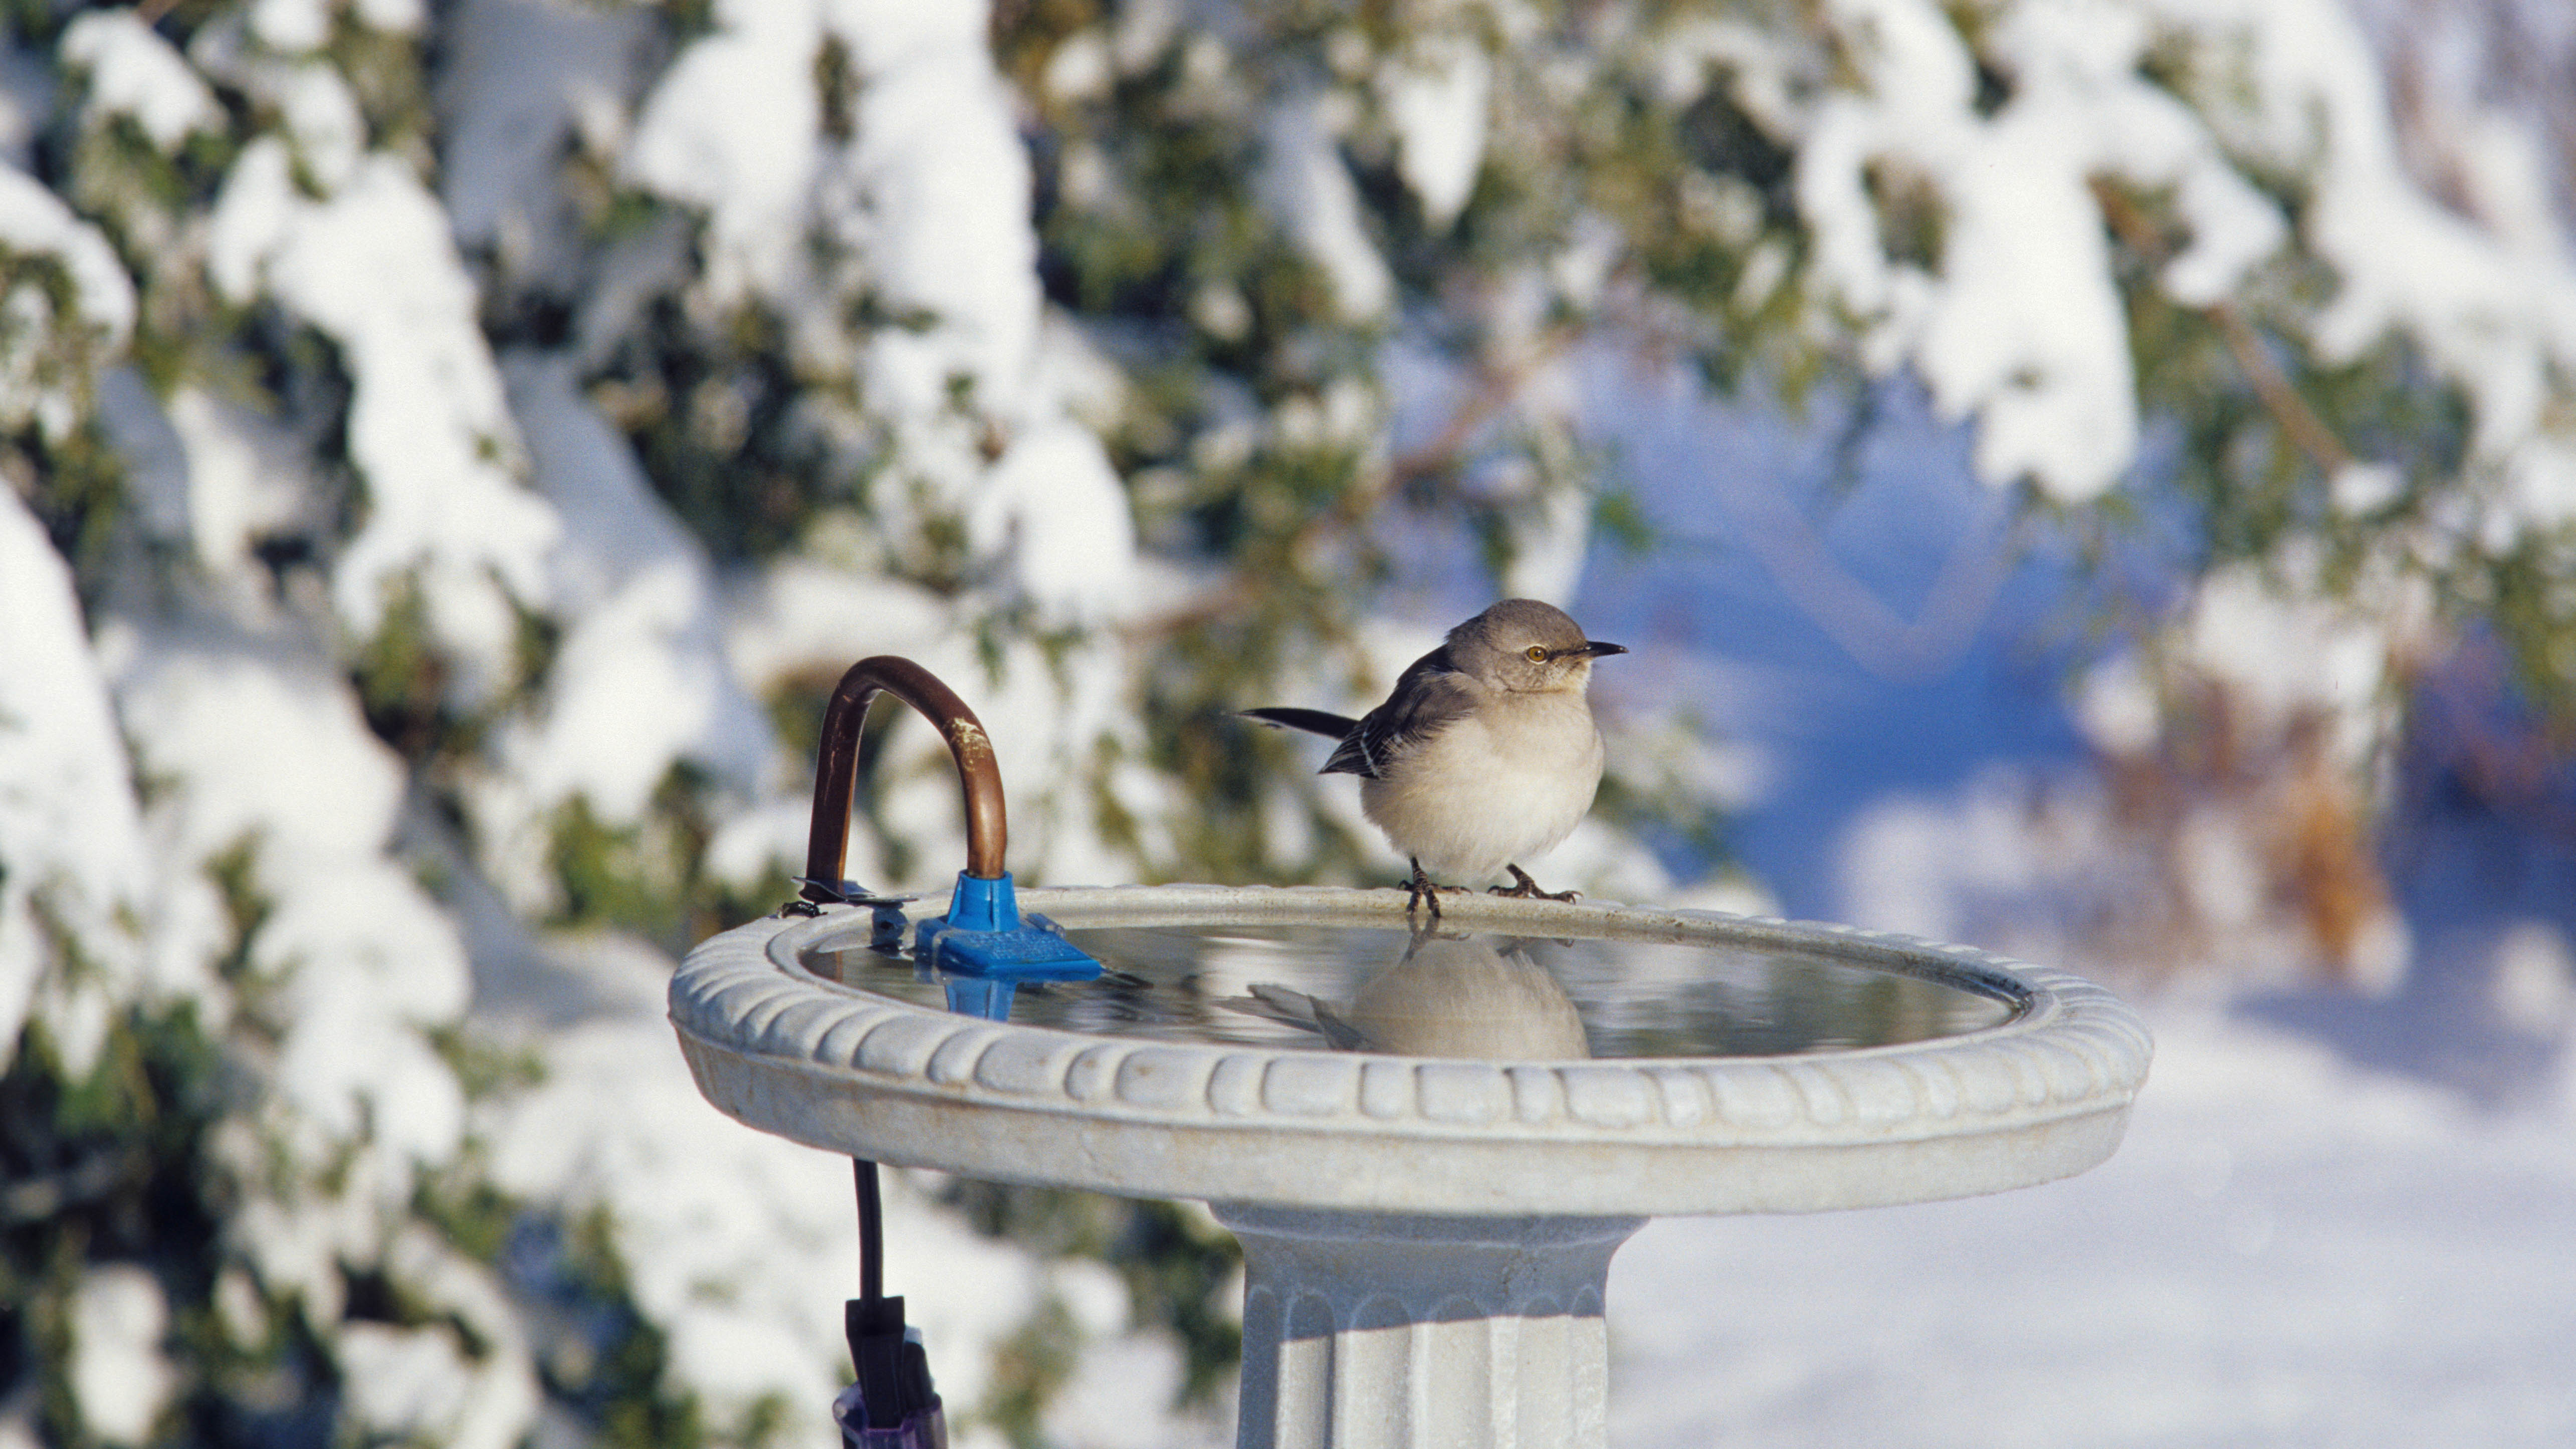 Зимой птица сидит на подогреваемой ванне для птиц